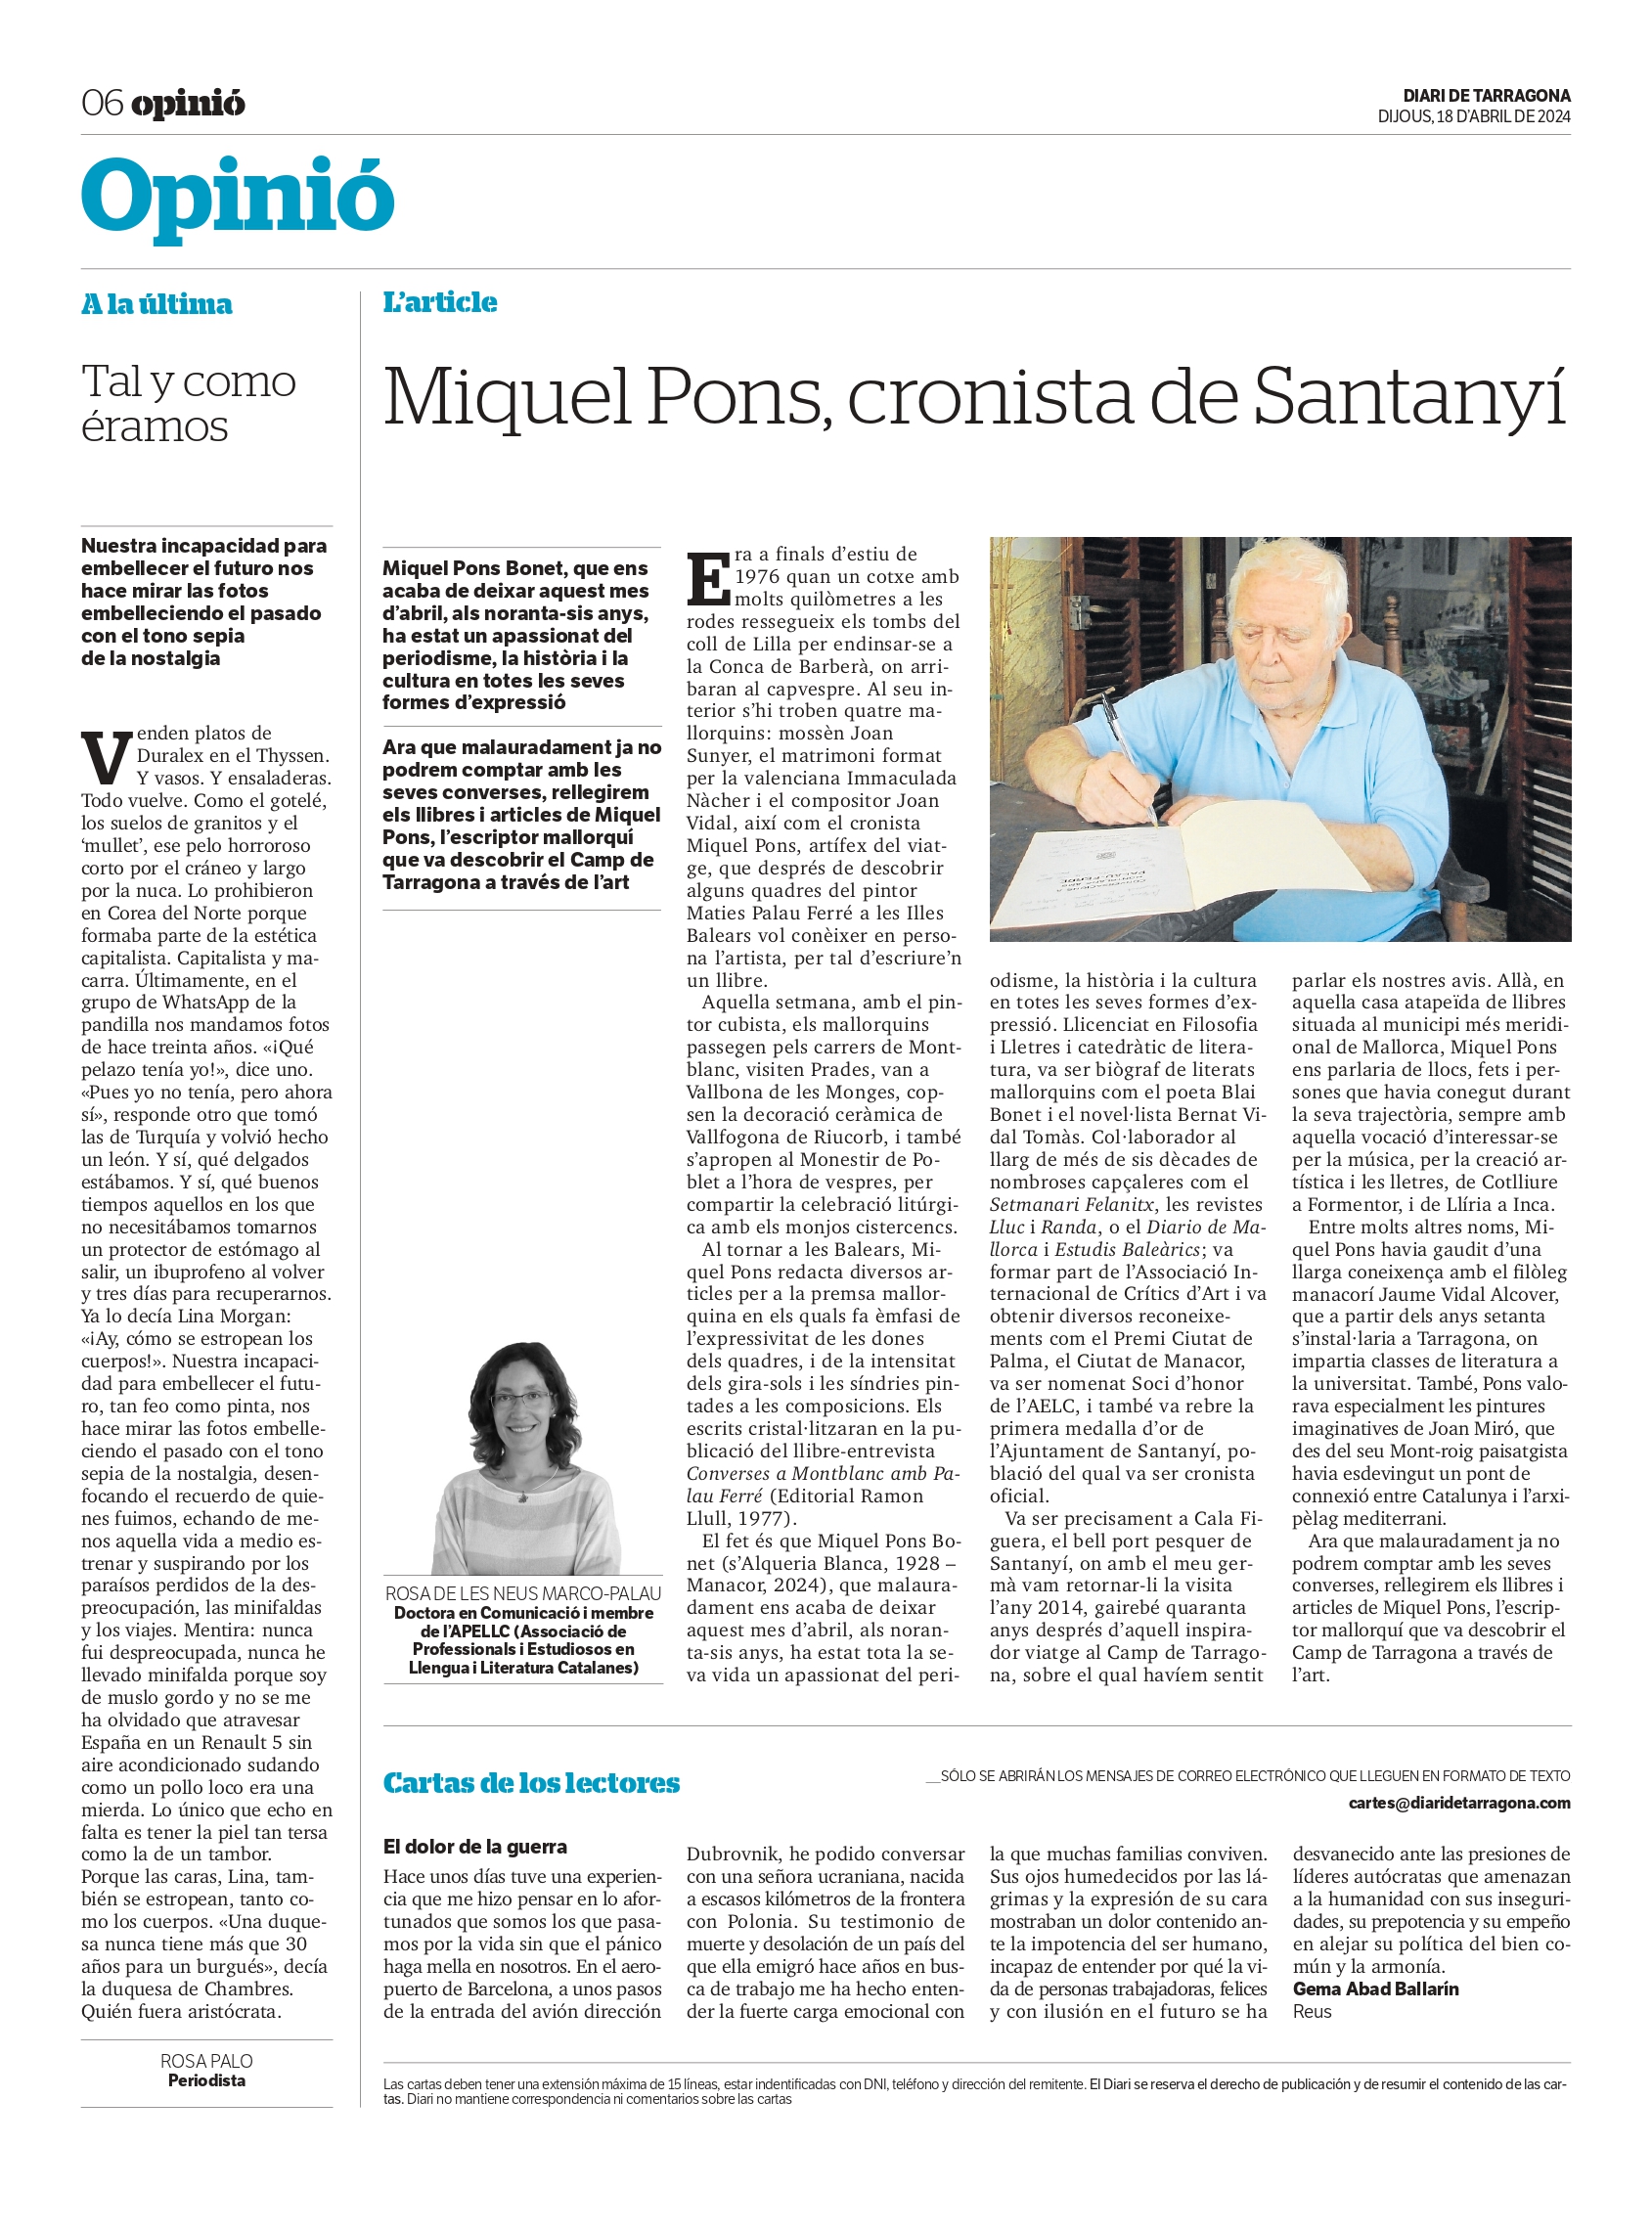 Article “Miquel Pons, cronista de Santanyí” de Rosa de les Neus Marco-Palau